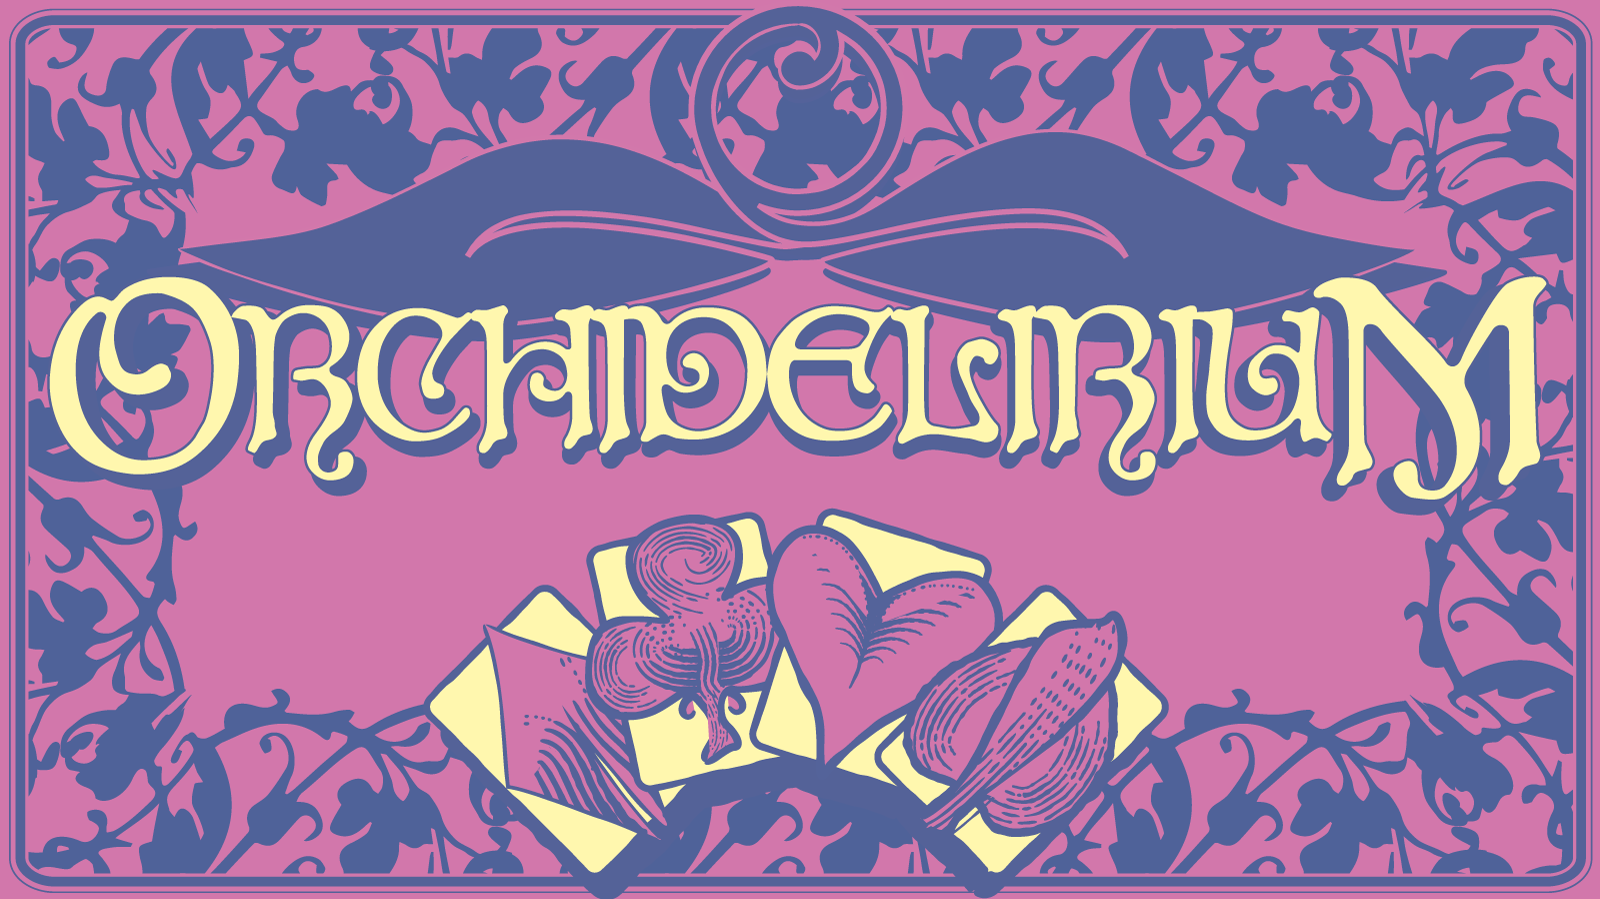 Orchidelirium logo